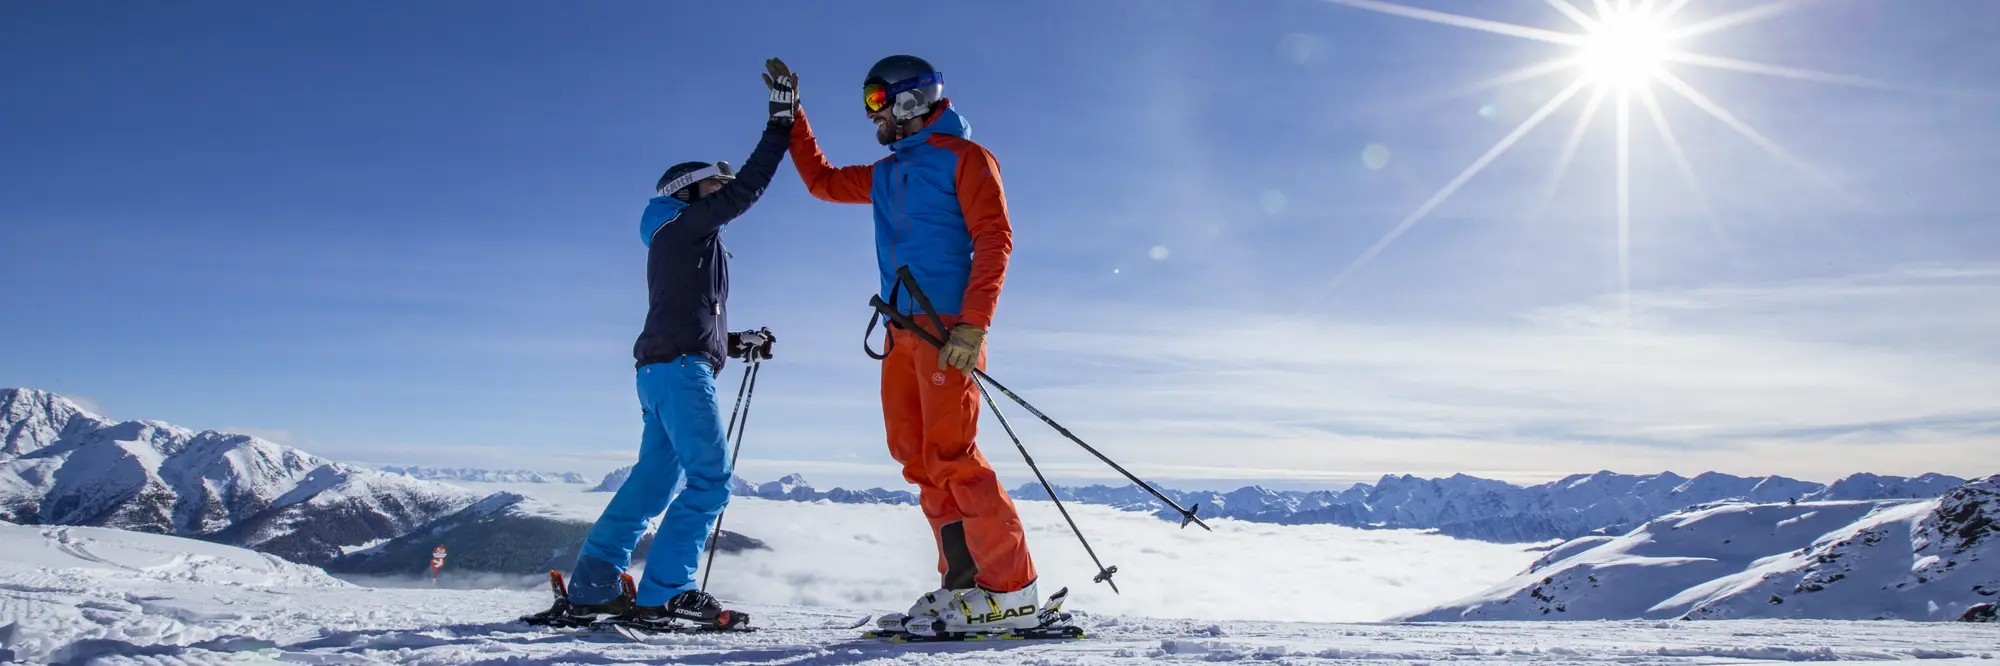 Pistenspaß im Skizentrum Sillian Hochpustertal © TVB Osttirol / Berg im Bild OG